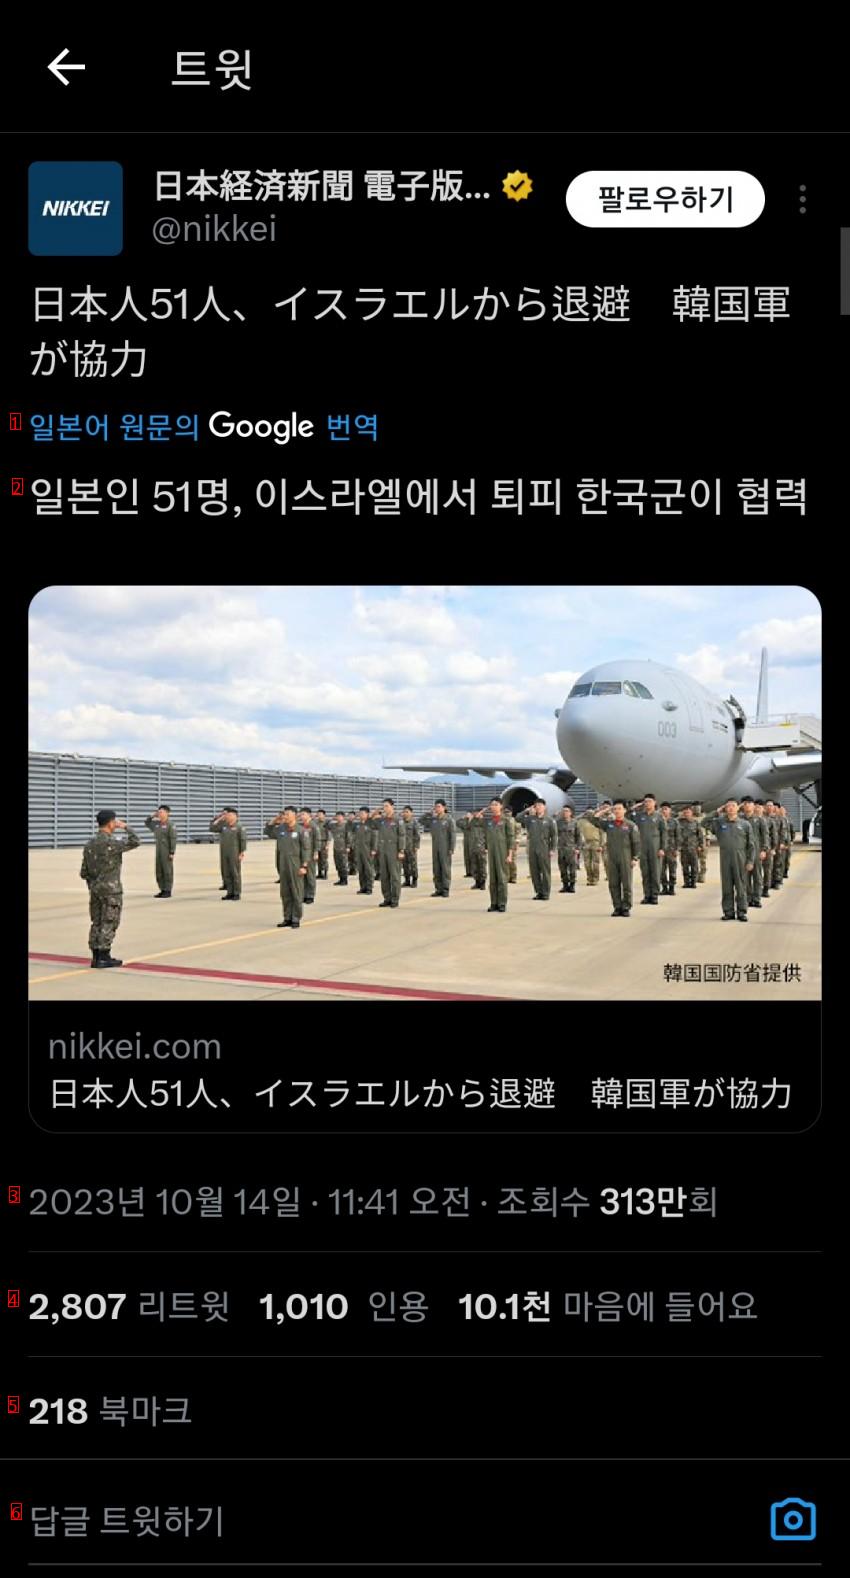 한국군이 일본인을 이스라엘에서 구출했다는 기사